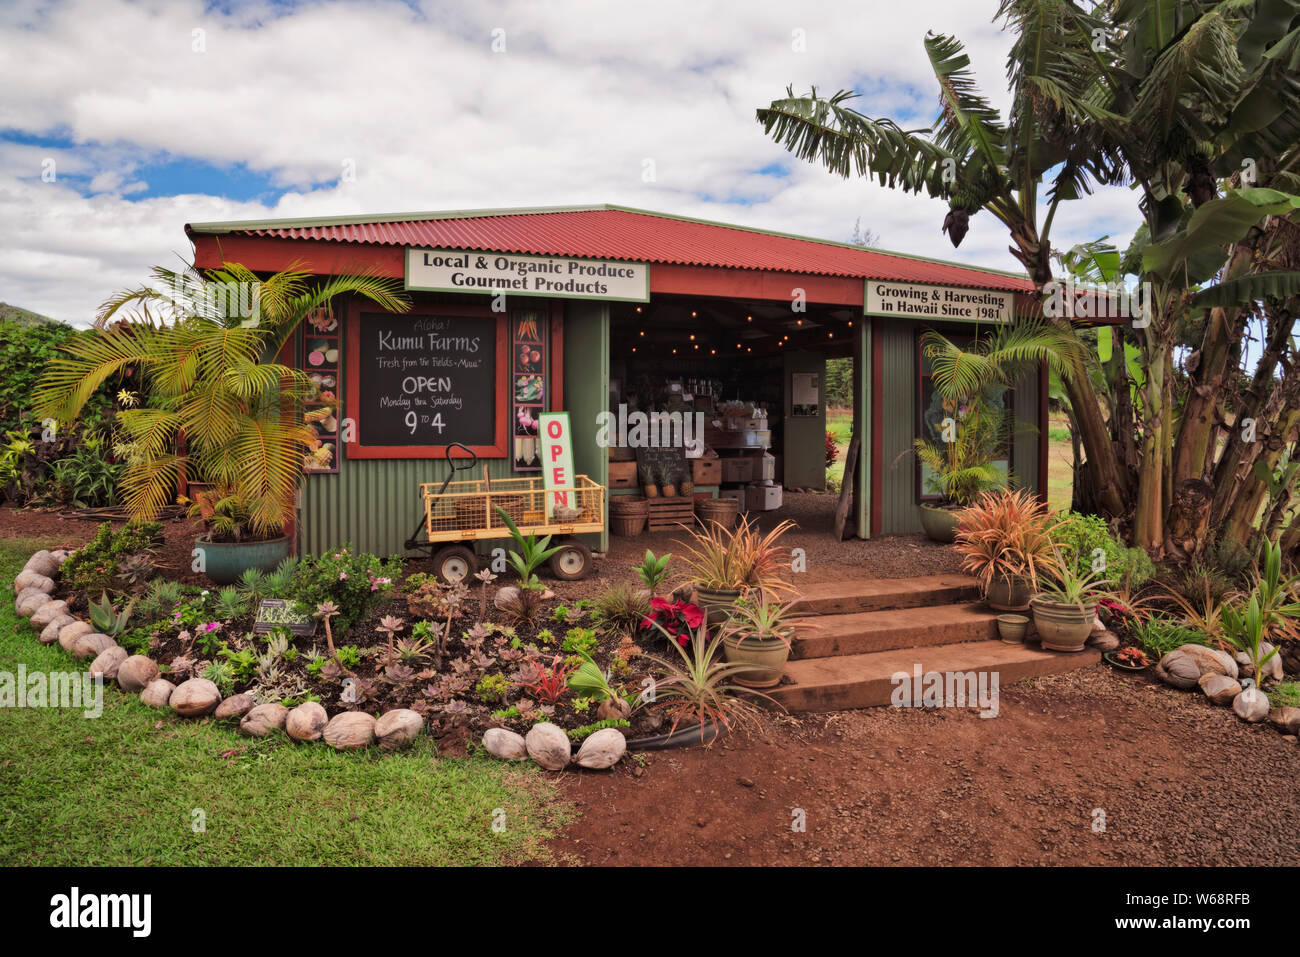 Uno de los muchos mercados del lado carretera vendiendo frutas y verduras locales en la isla de Maui, Hawai. Foto de stock